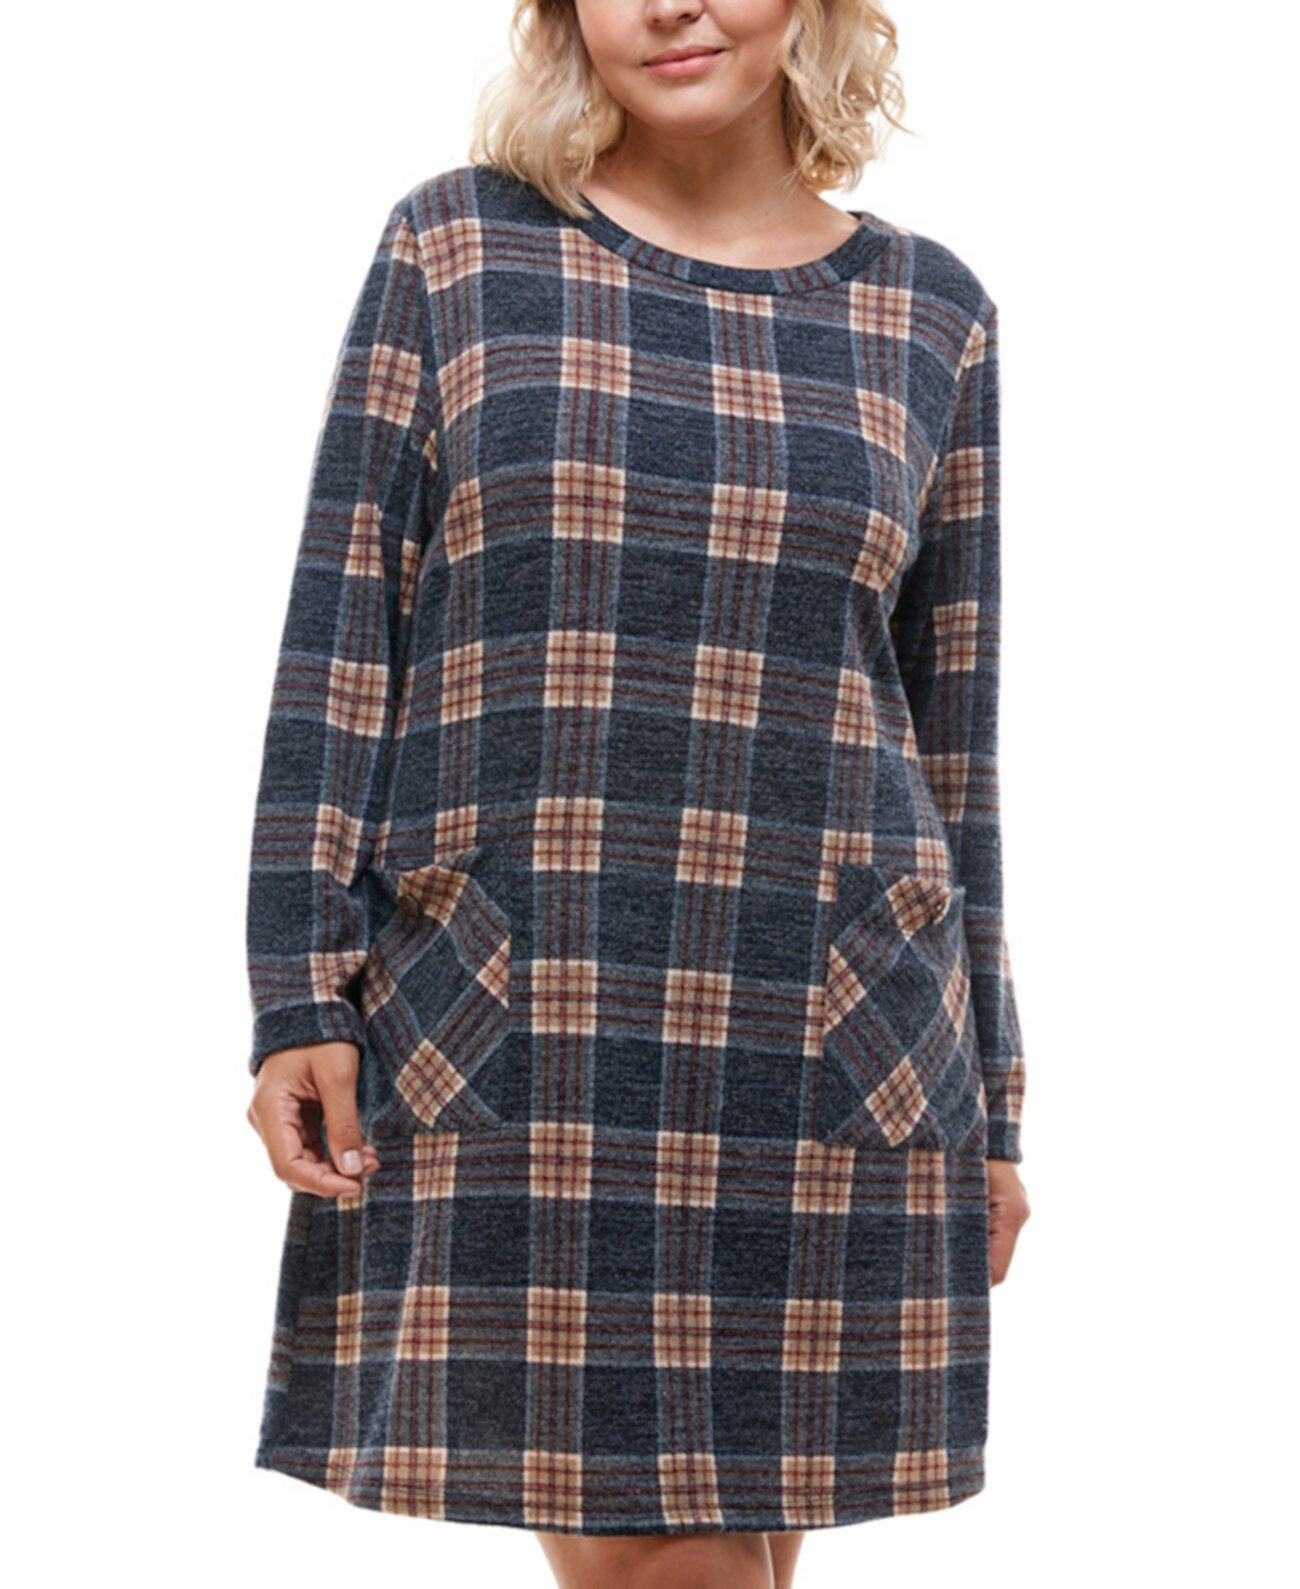 Модное платье-свитер в клетку больших размеров Monteau